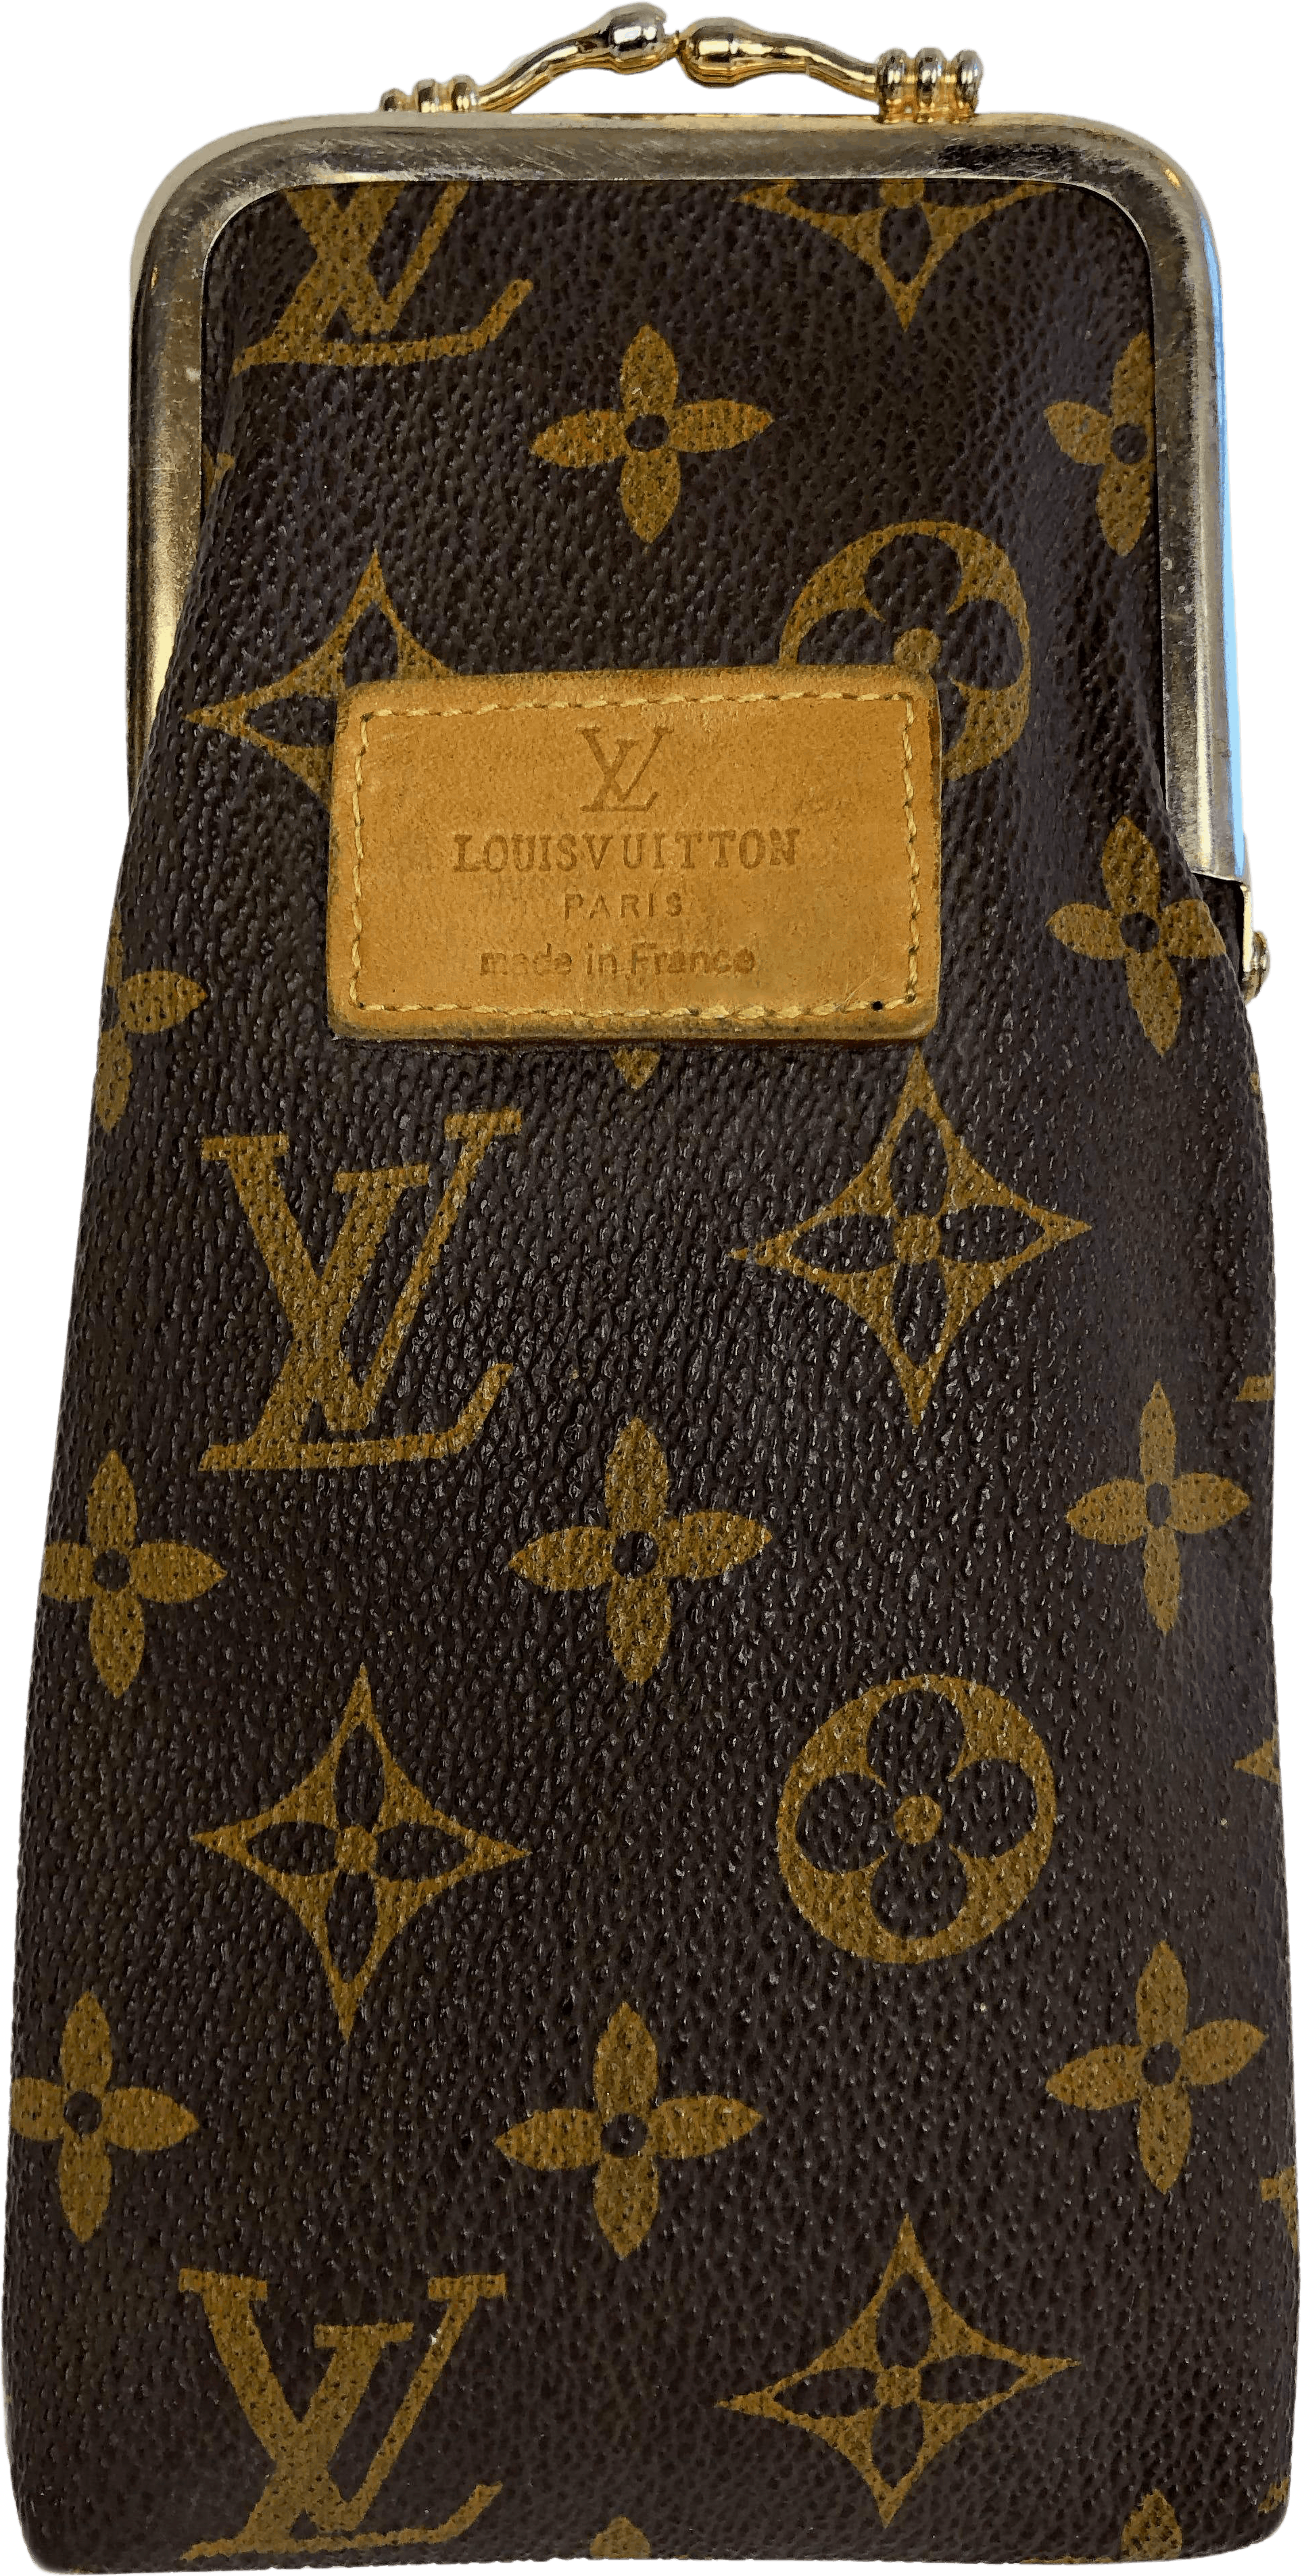 70's Paris Monogram Wallet Cigarette Case by Louis Vuitton